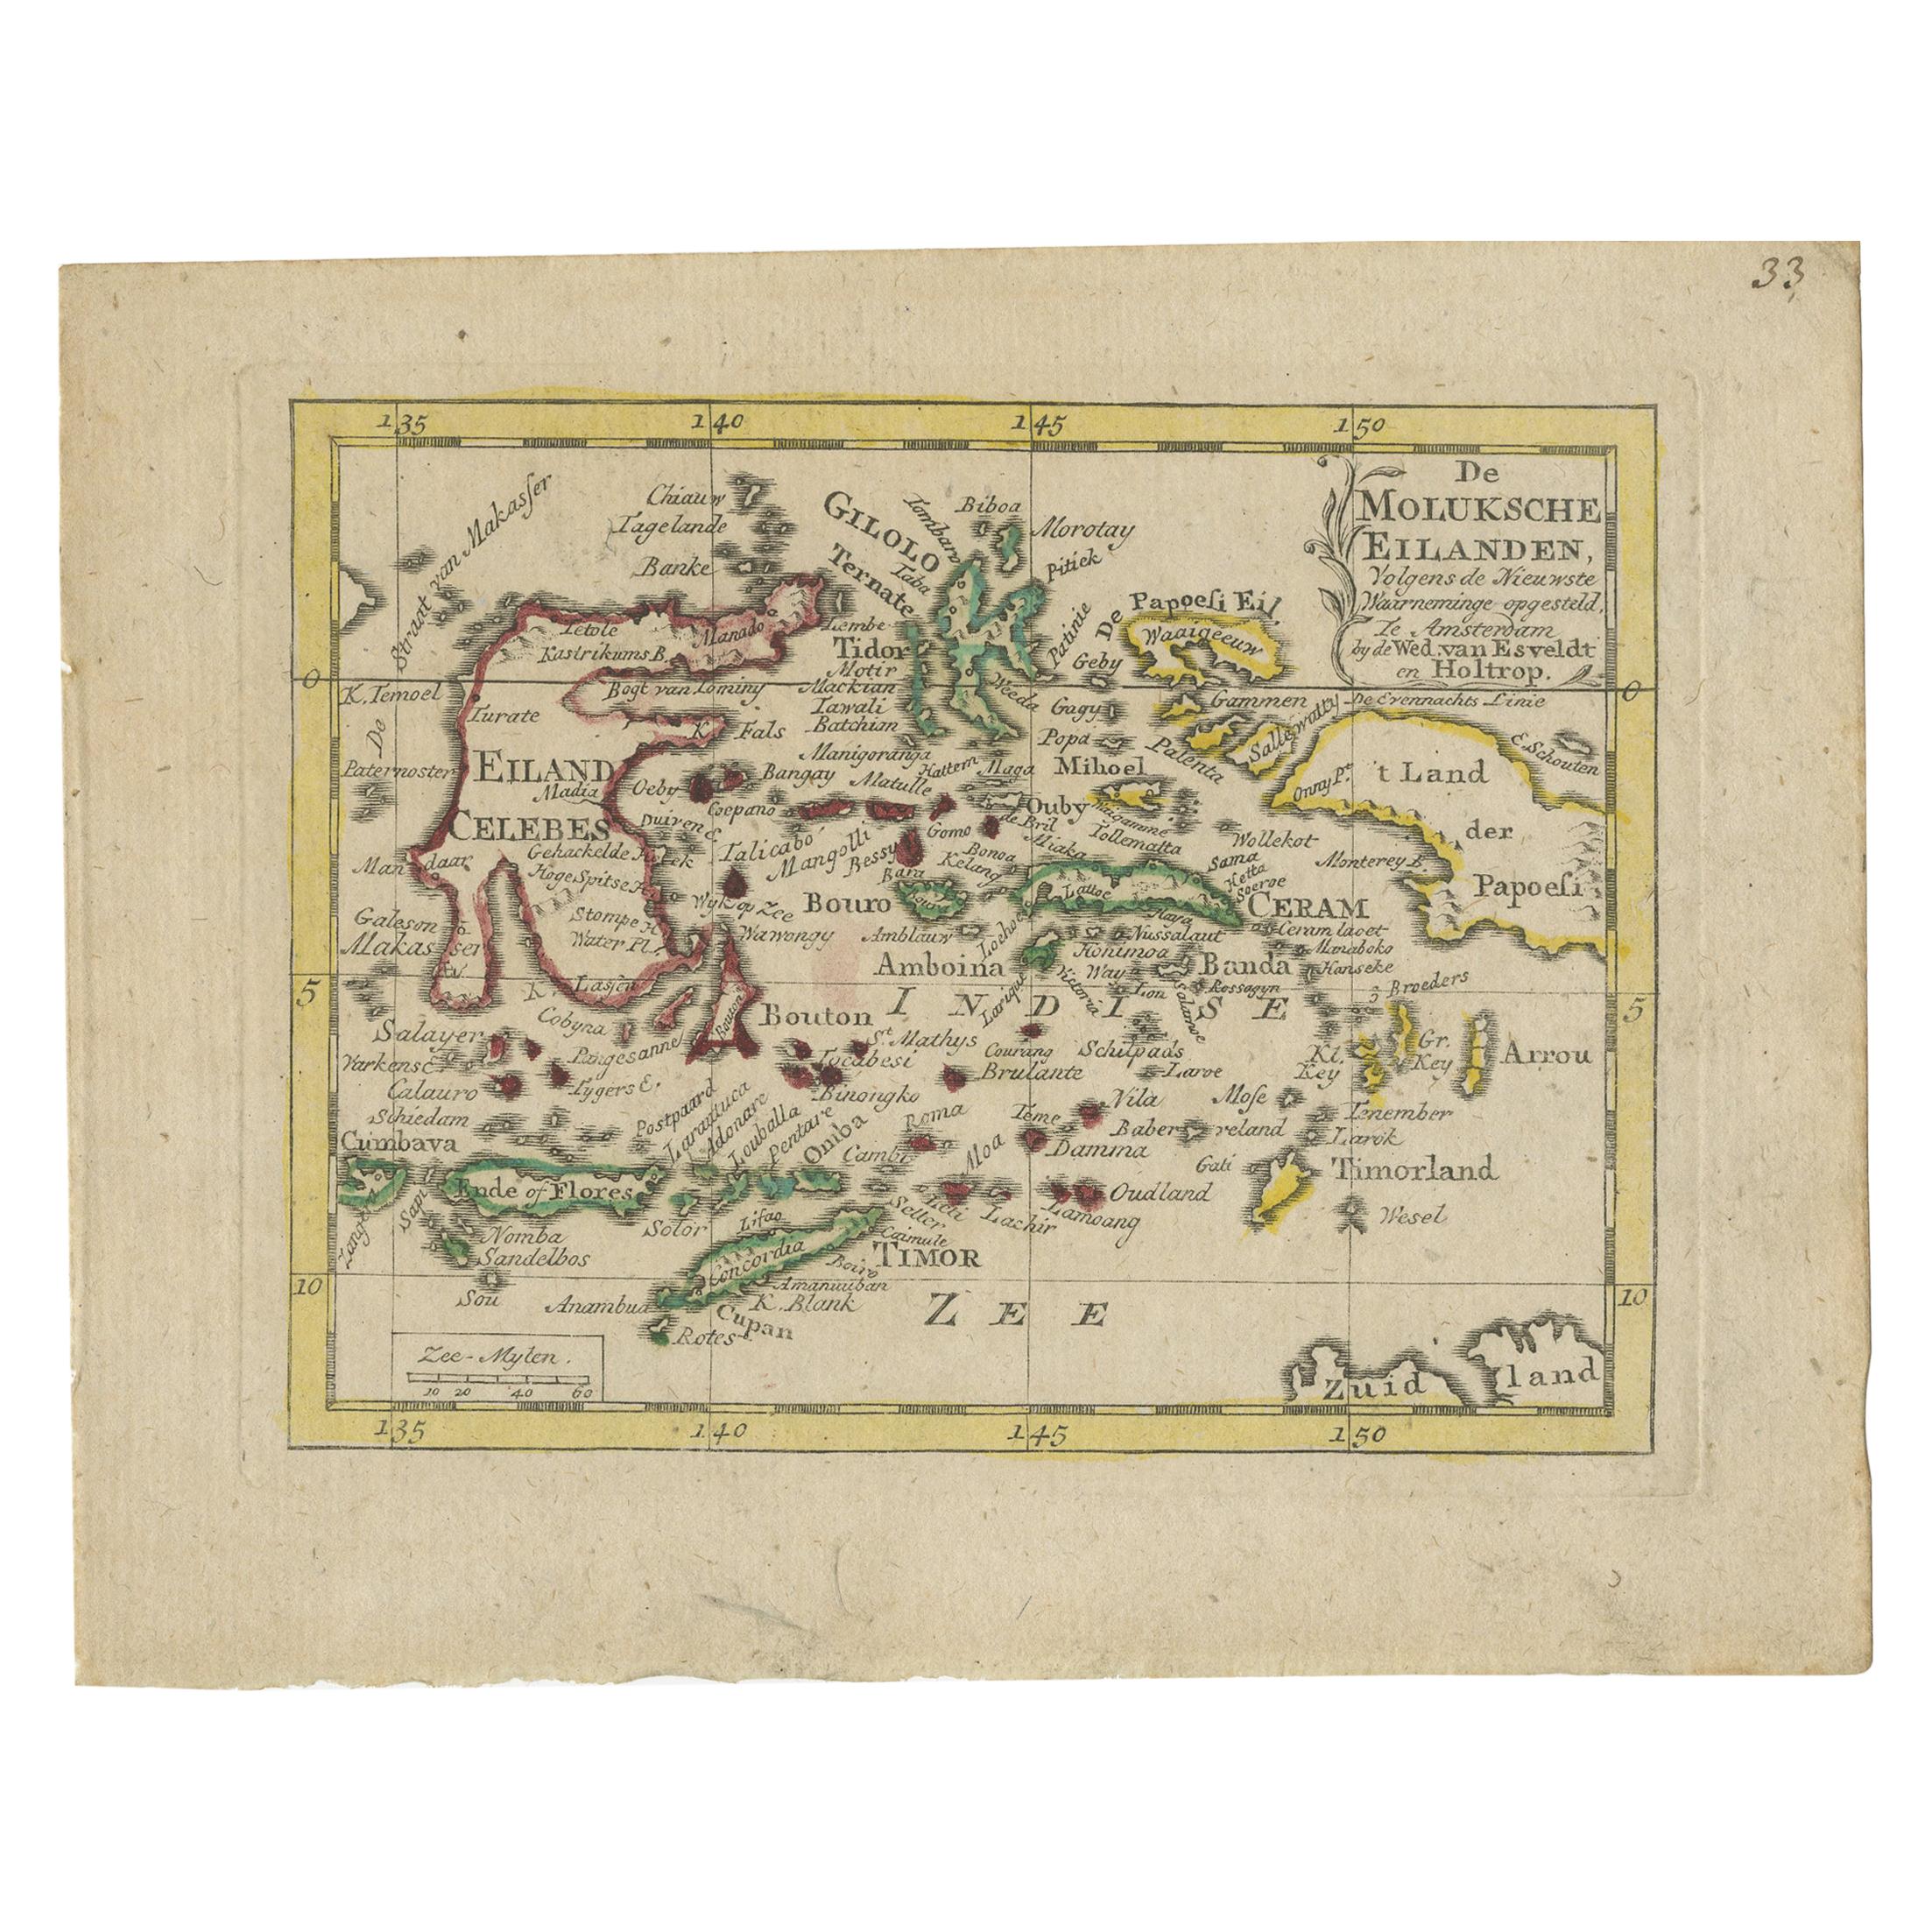 Carte miniature ancienne des îles Maluku par Van Esveldt & Holtrop, vers 1790